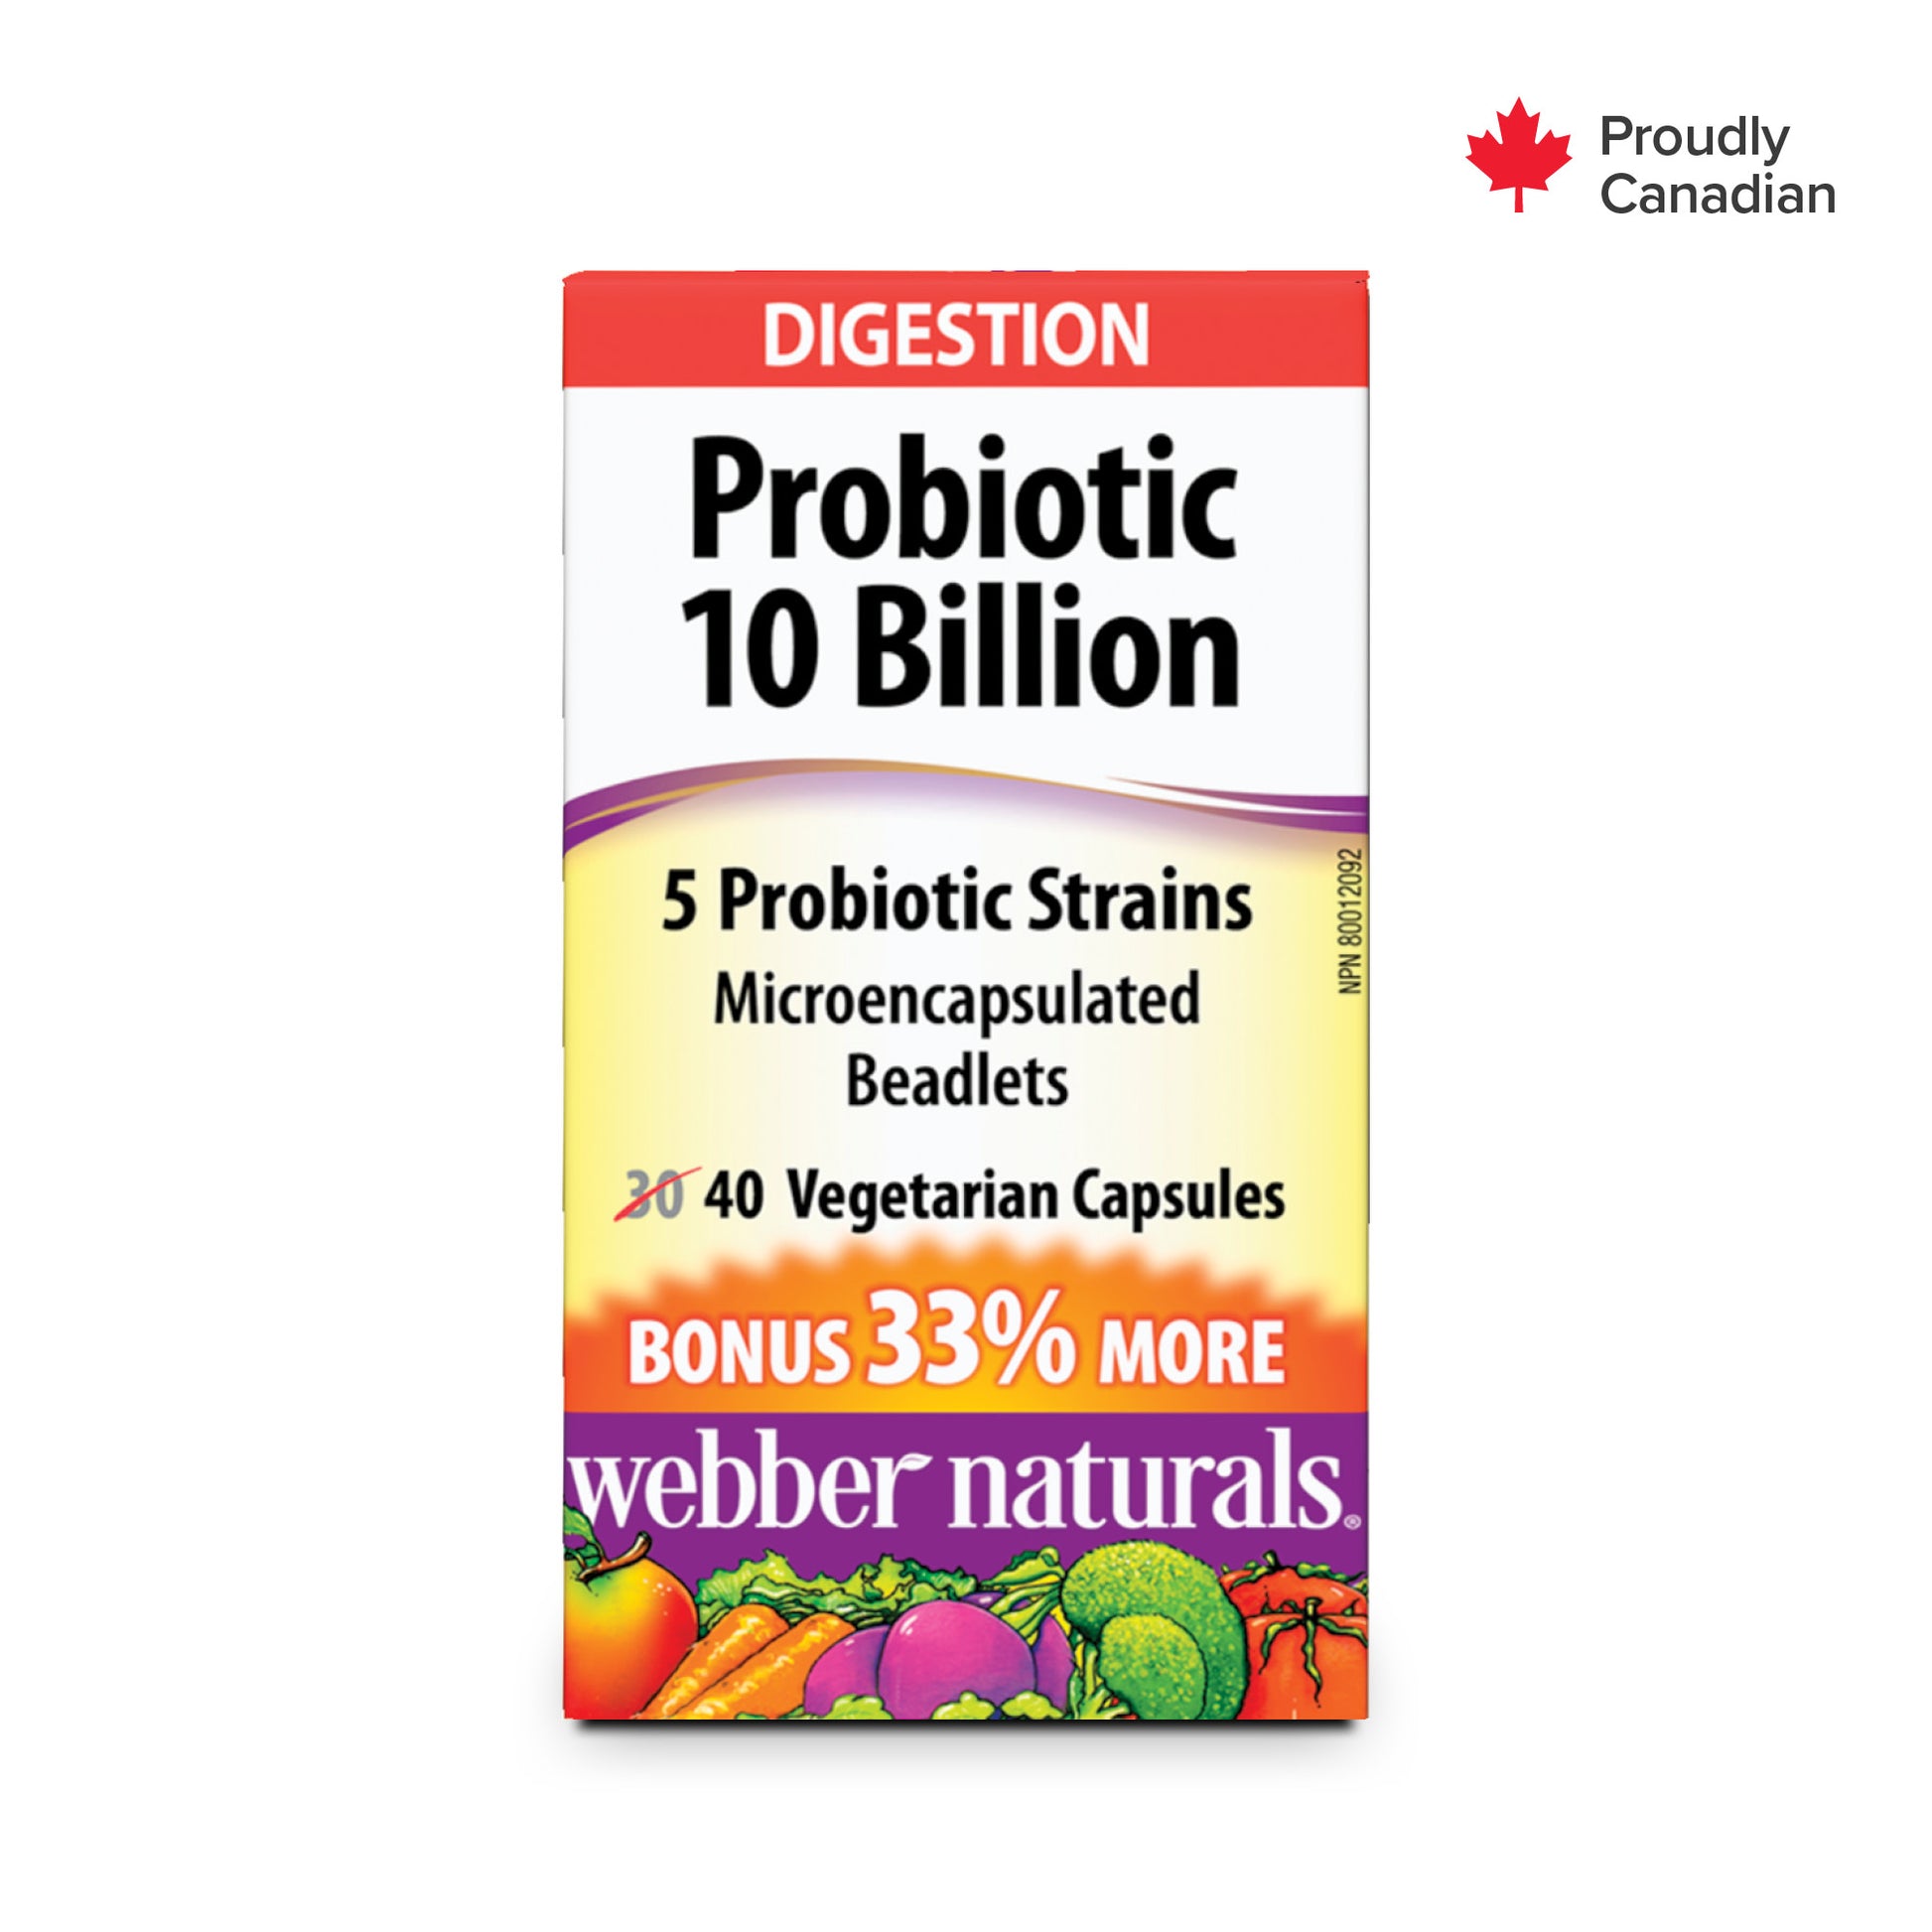 Probiotic 10 Billion for Webber Naturals|v|hi-res|WN3844